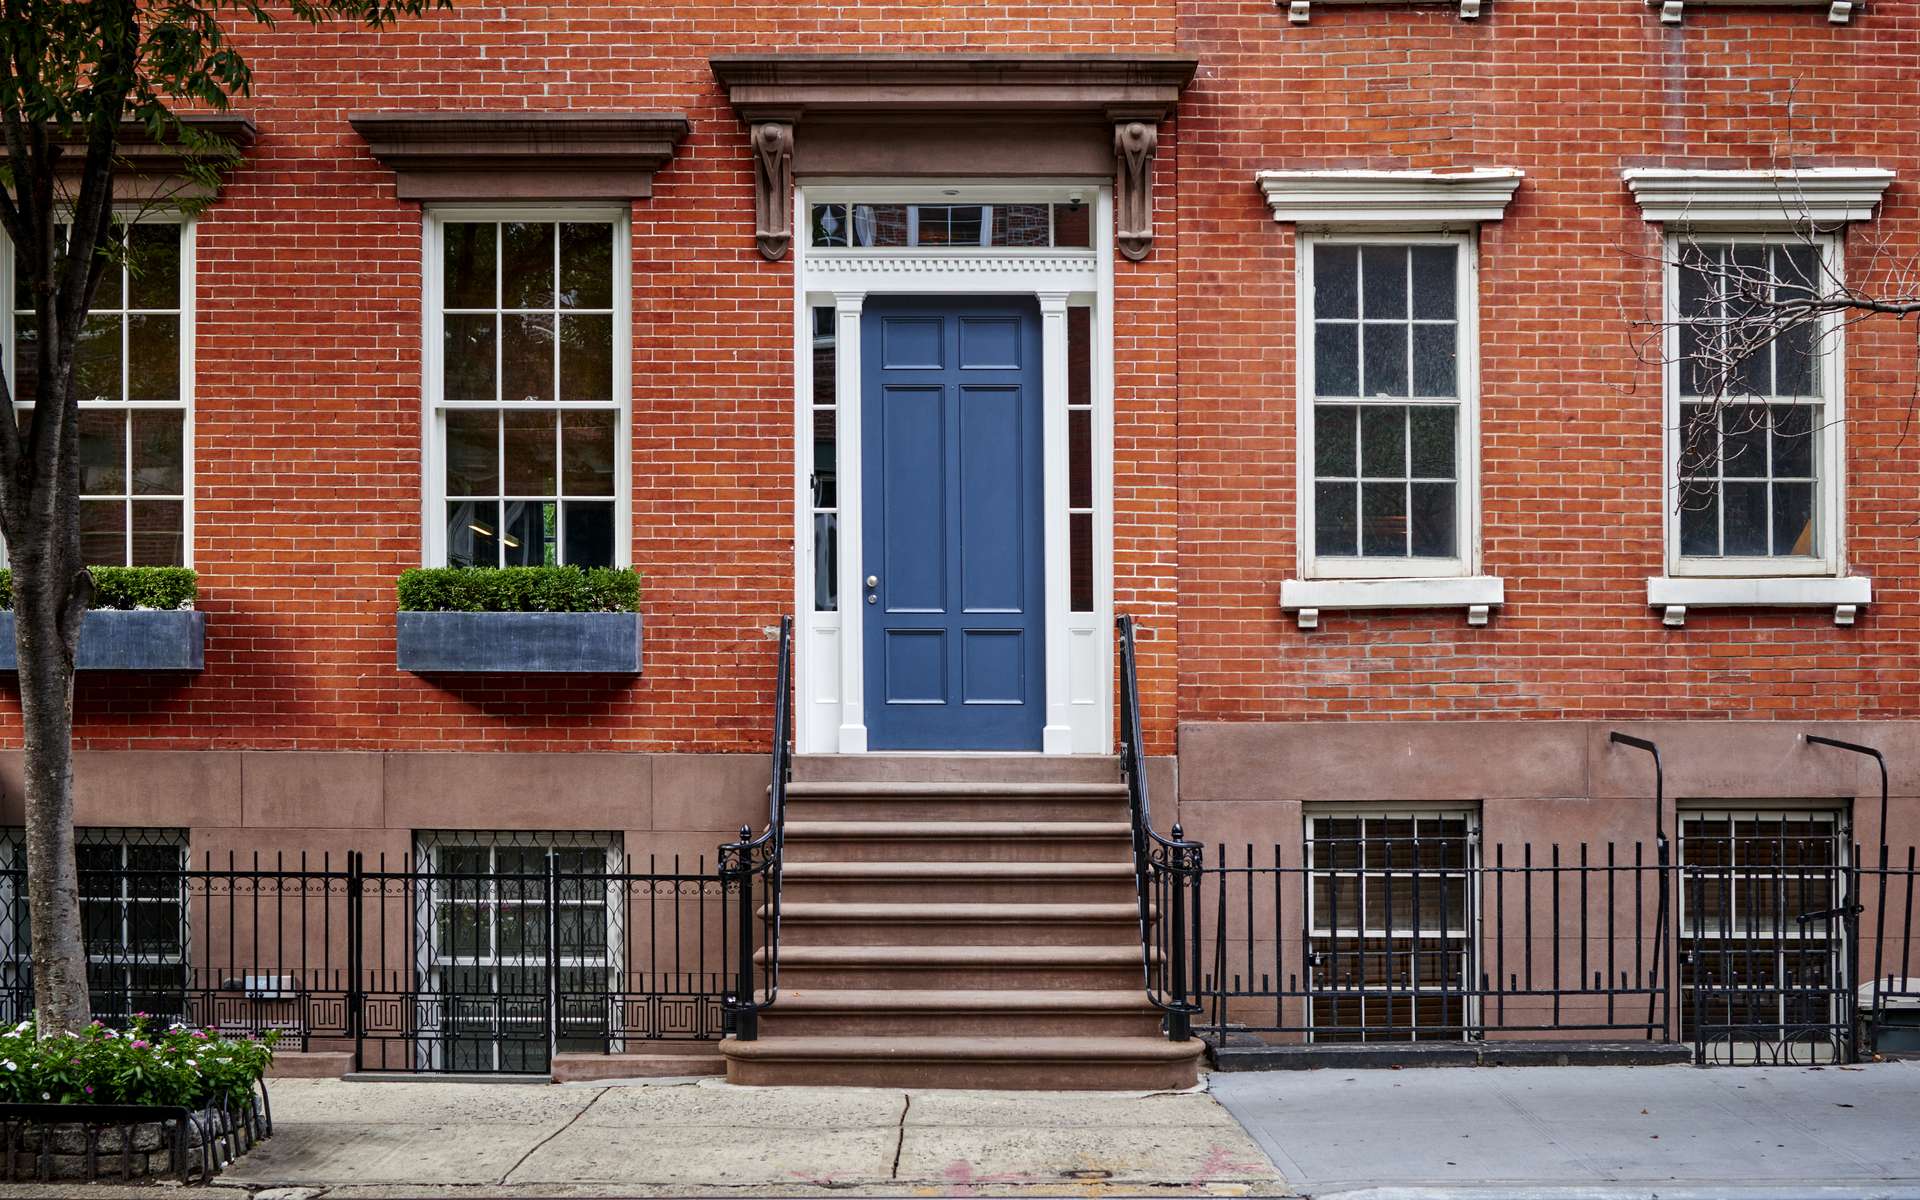 La transaction immobilière de cette résidence luxueuse avec sa façade de briques se fera-t-elle en cryptomonnaie d'ici cinq ans ? © goodmanphoto, Adobe Stock